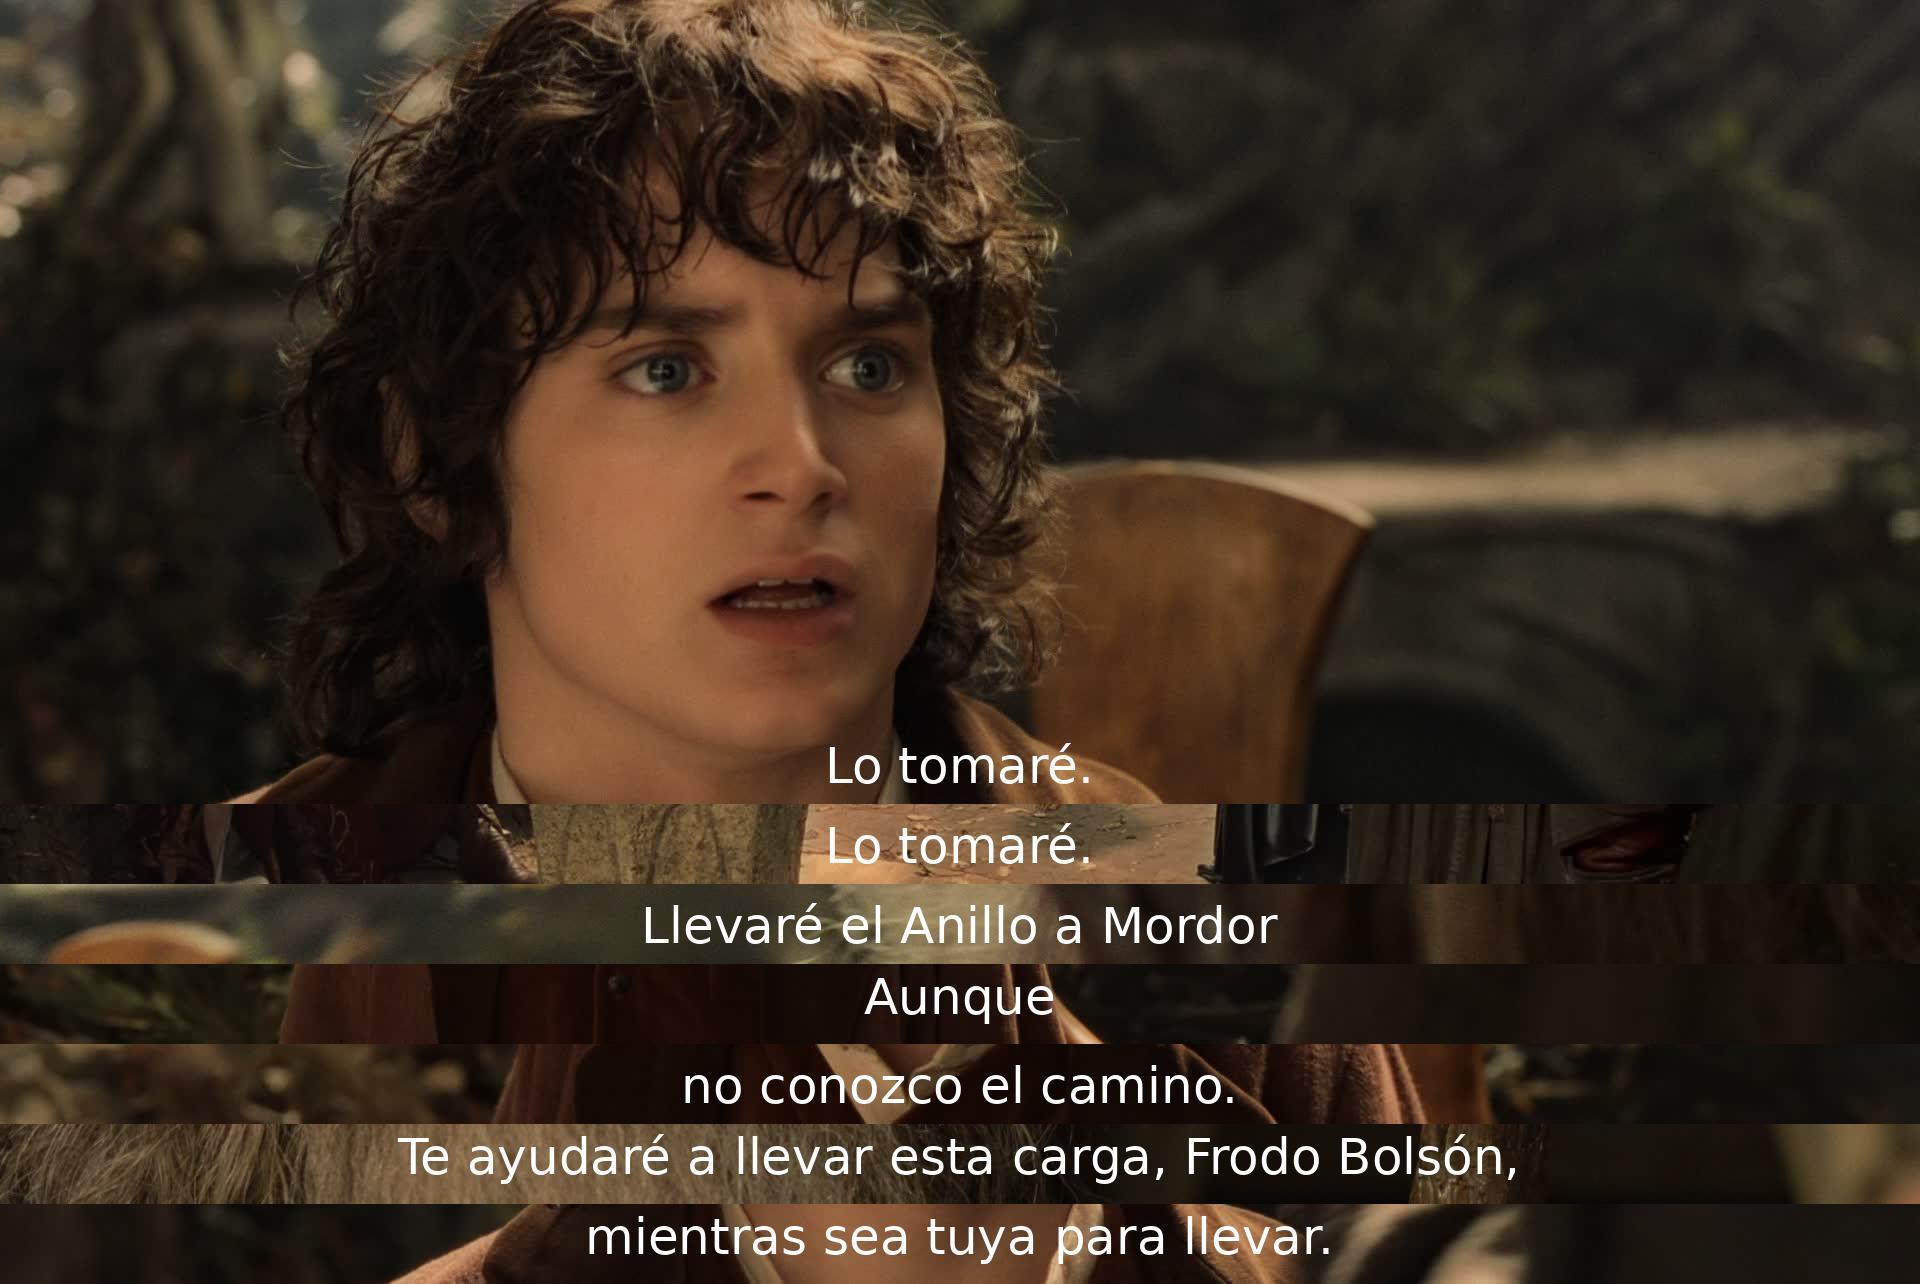 Aceptaré la carga del Anillo y acompañaré a Frodo a Mordor, a pesar de no conocer el camino. Juntos nos encargaremos de llevar esta importante responsabilidad.